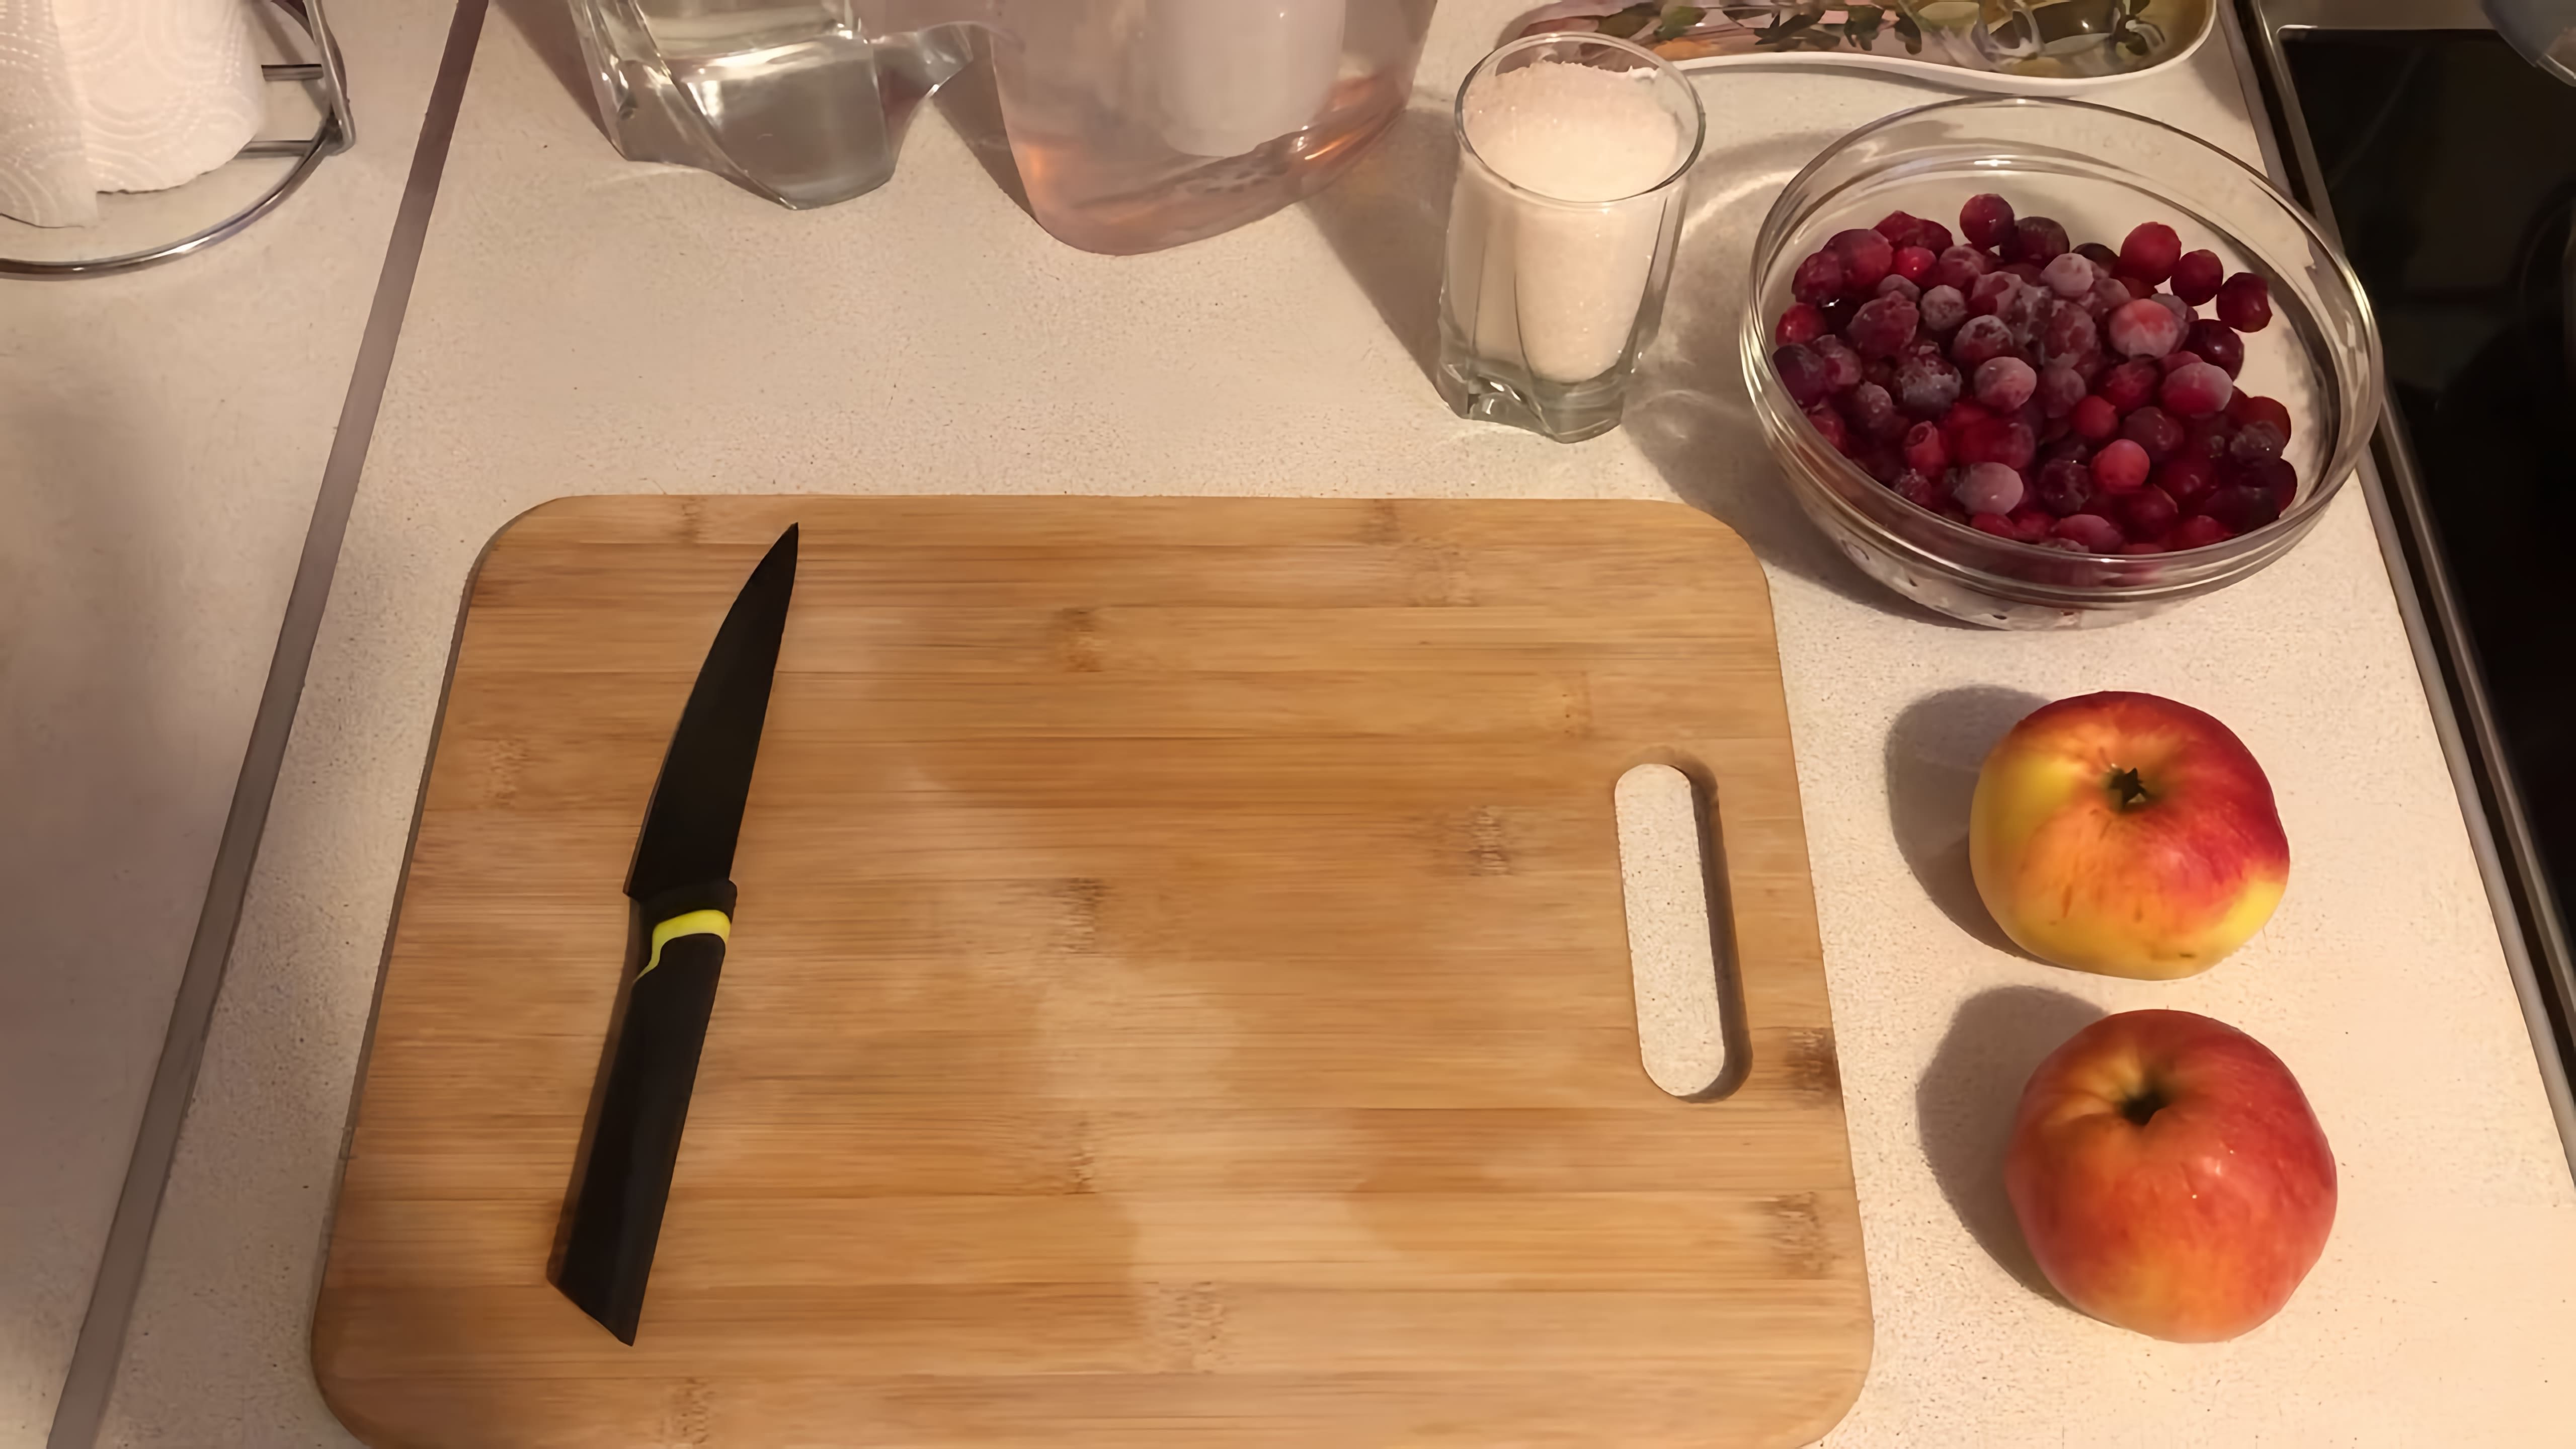 В этом видео демонстрируется процесс приготовления компота из клюквы и яблок